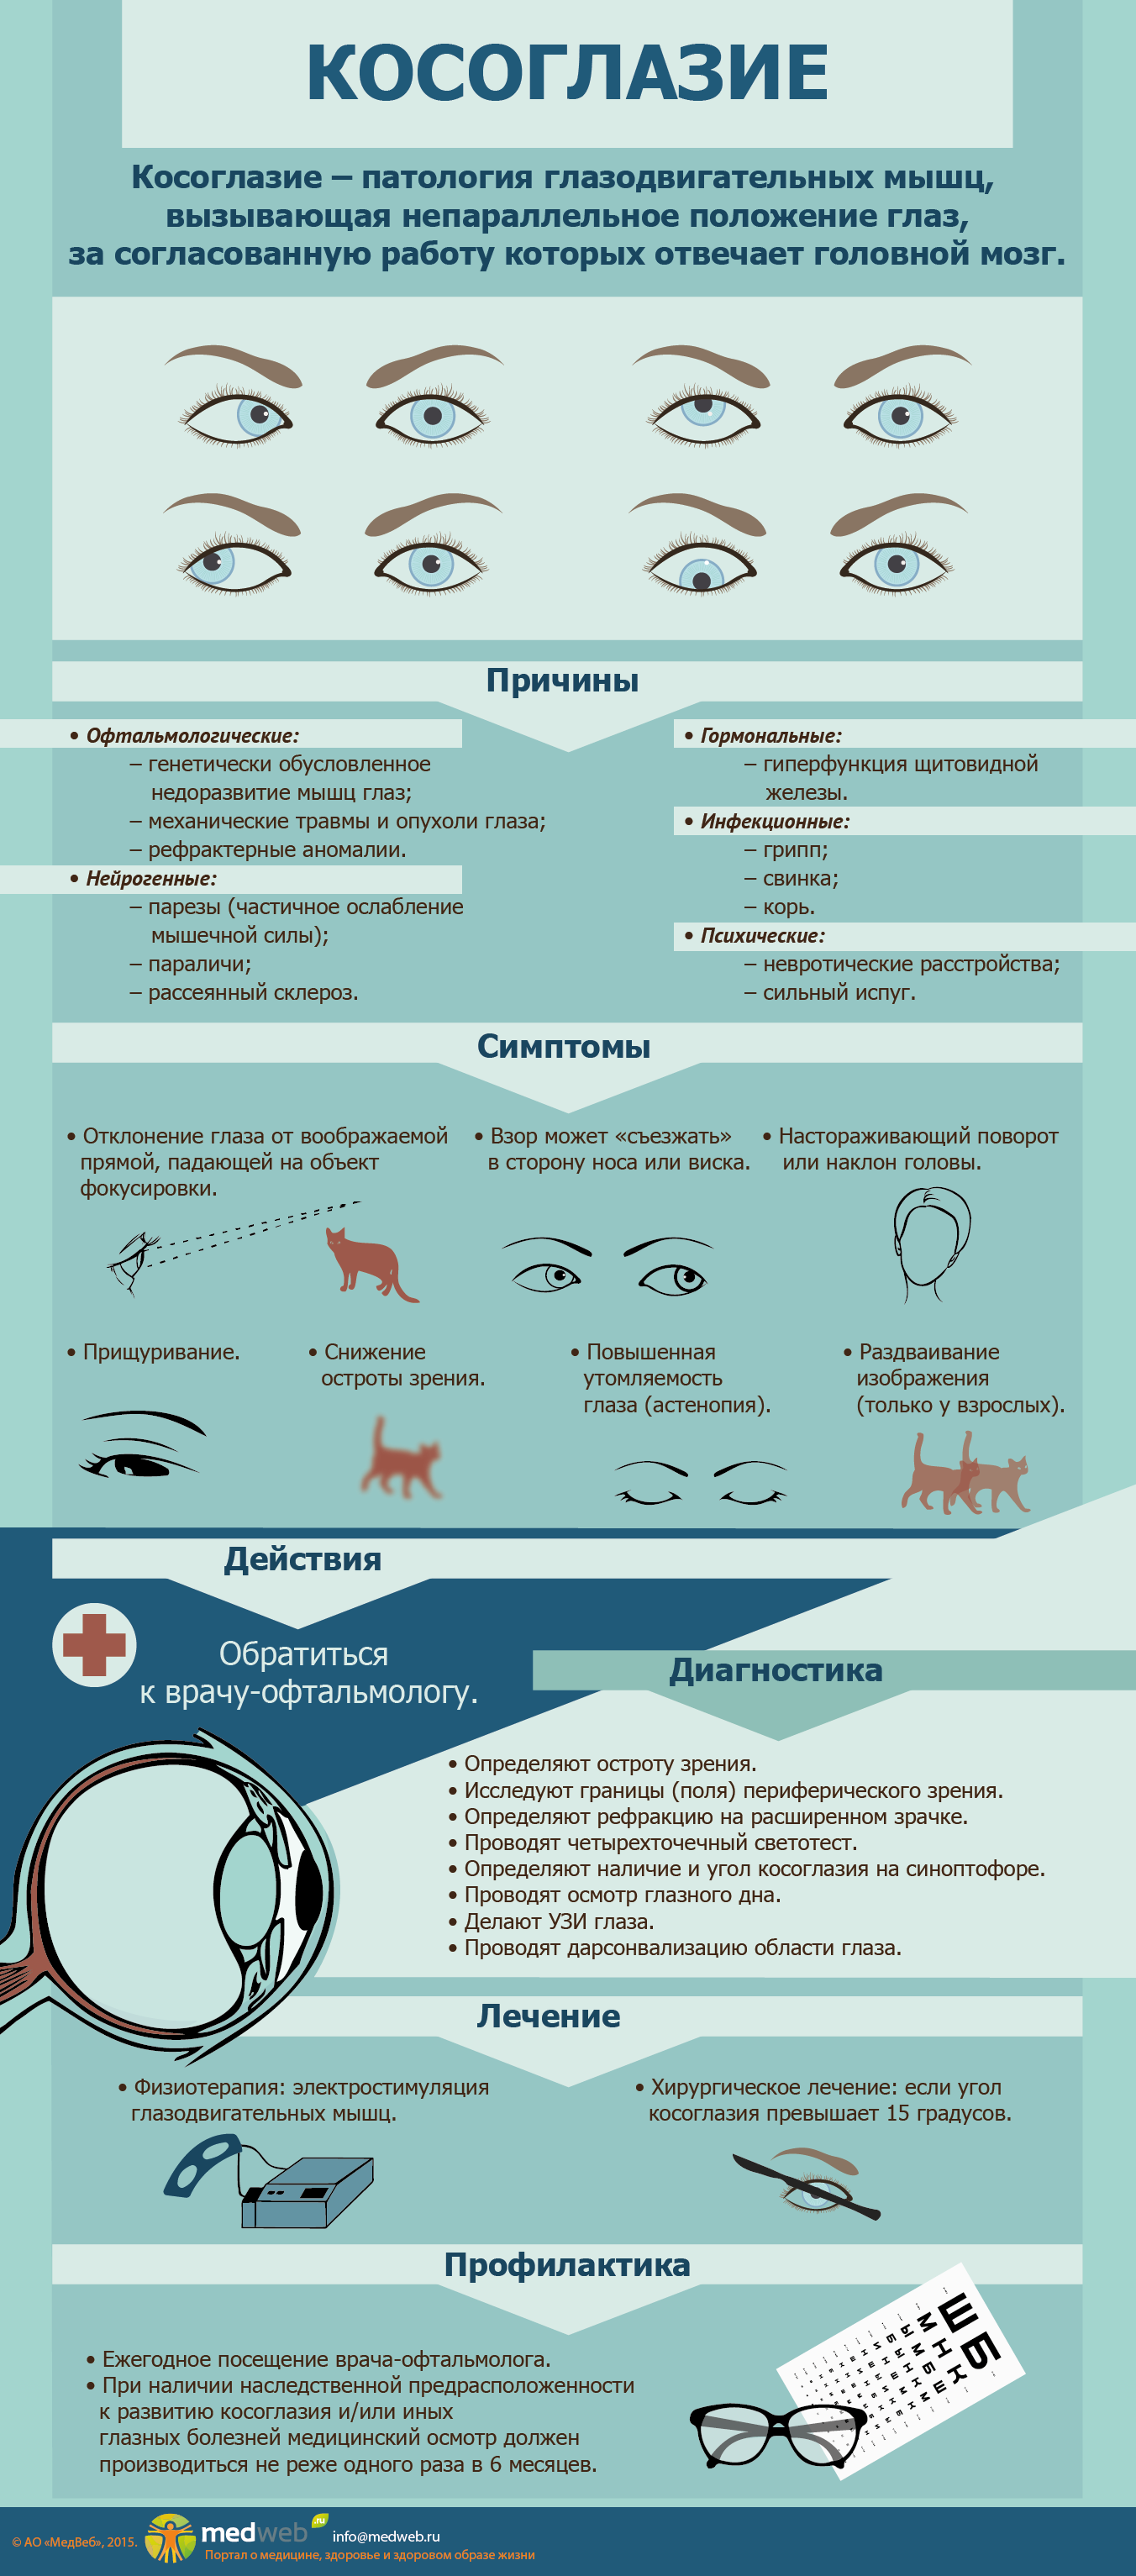 Косоглазие симптомы. Таблица заболевания глаз косоглазие. Косоглазие причины возникновения. Инфографика заболевания глаз. Профилактика косоглазия.